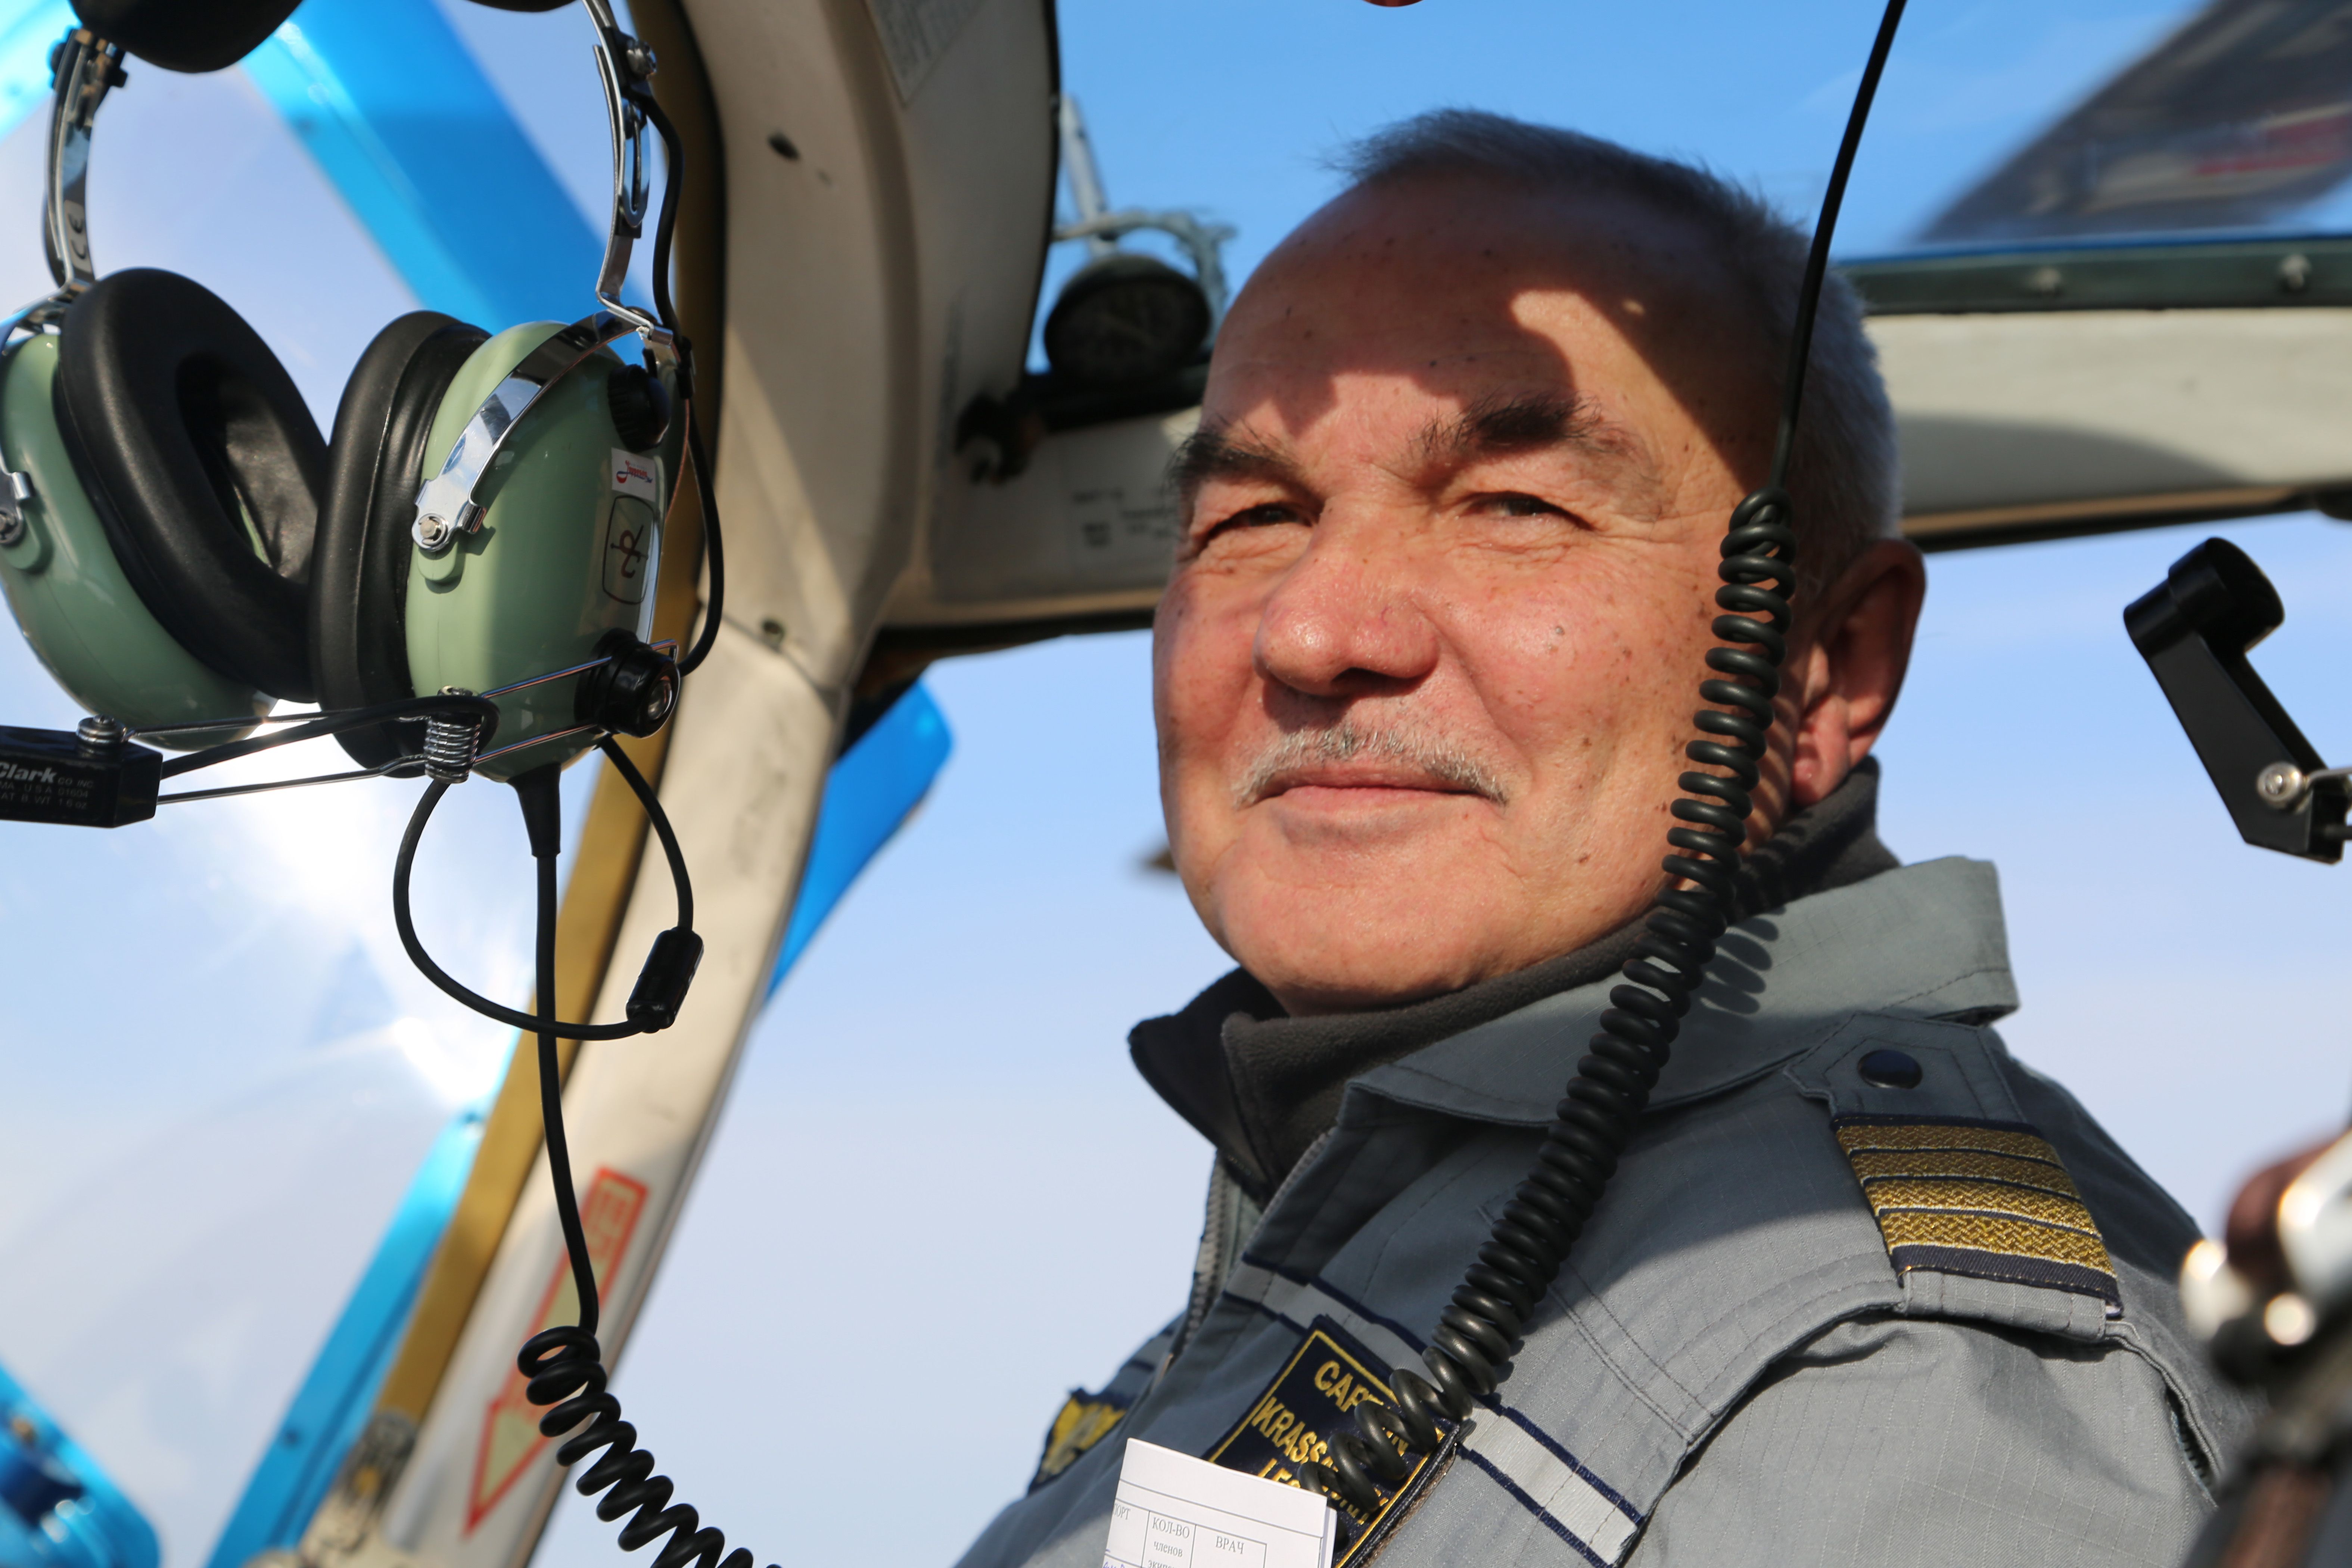 Экскурсиями на самолетах и вертолетах в Алматы занимаются около 5-6 компаний. 